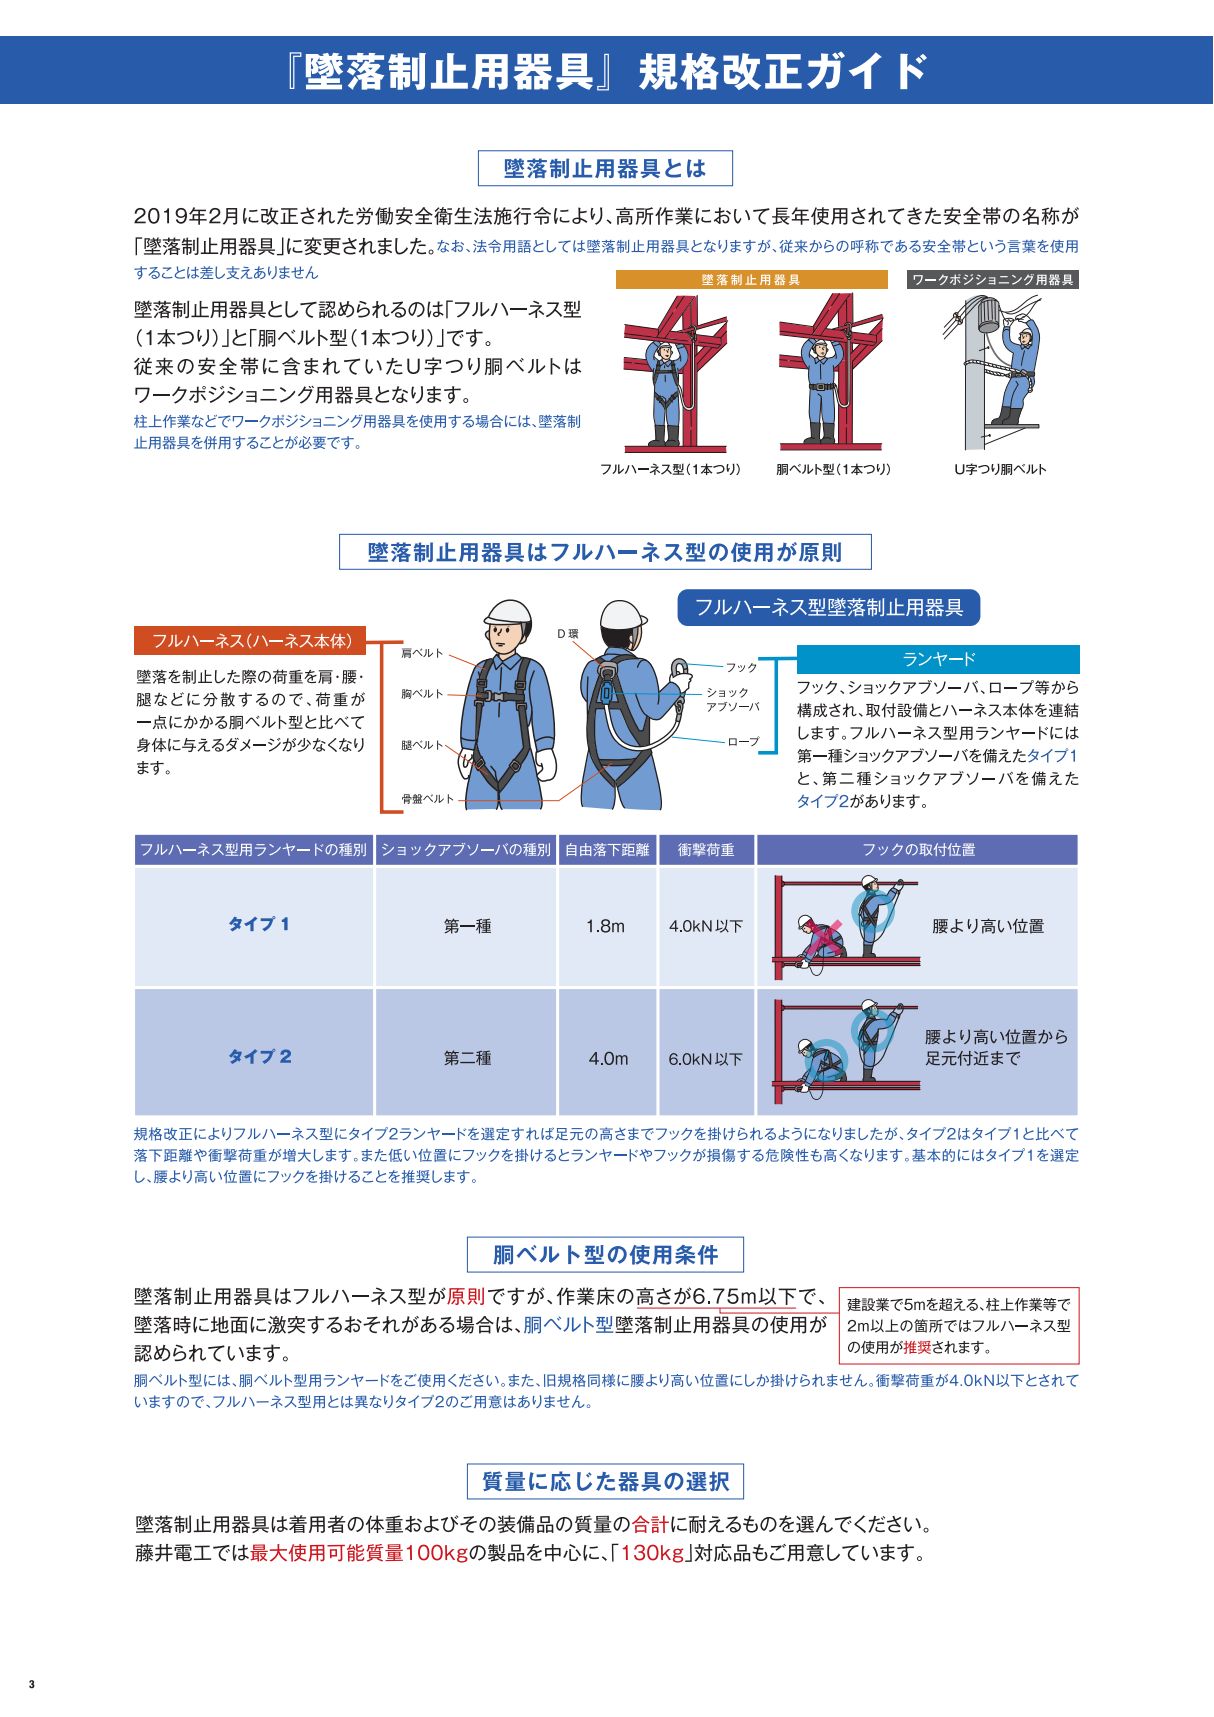 藤井電工カタログ「フルハーネス型安全帯」着用義務についての解説1